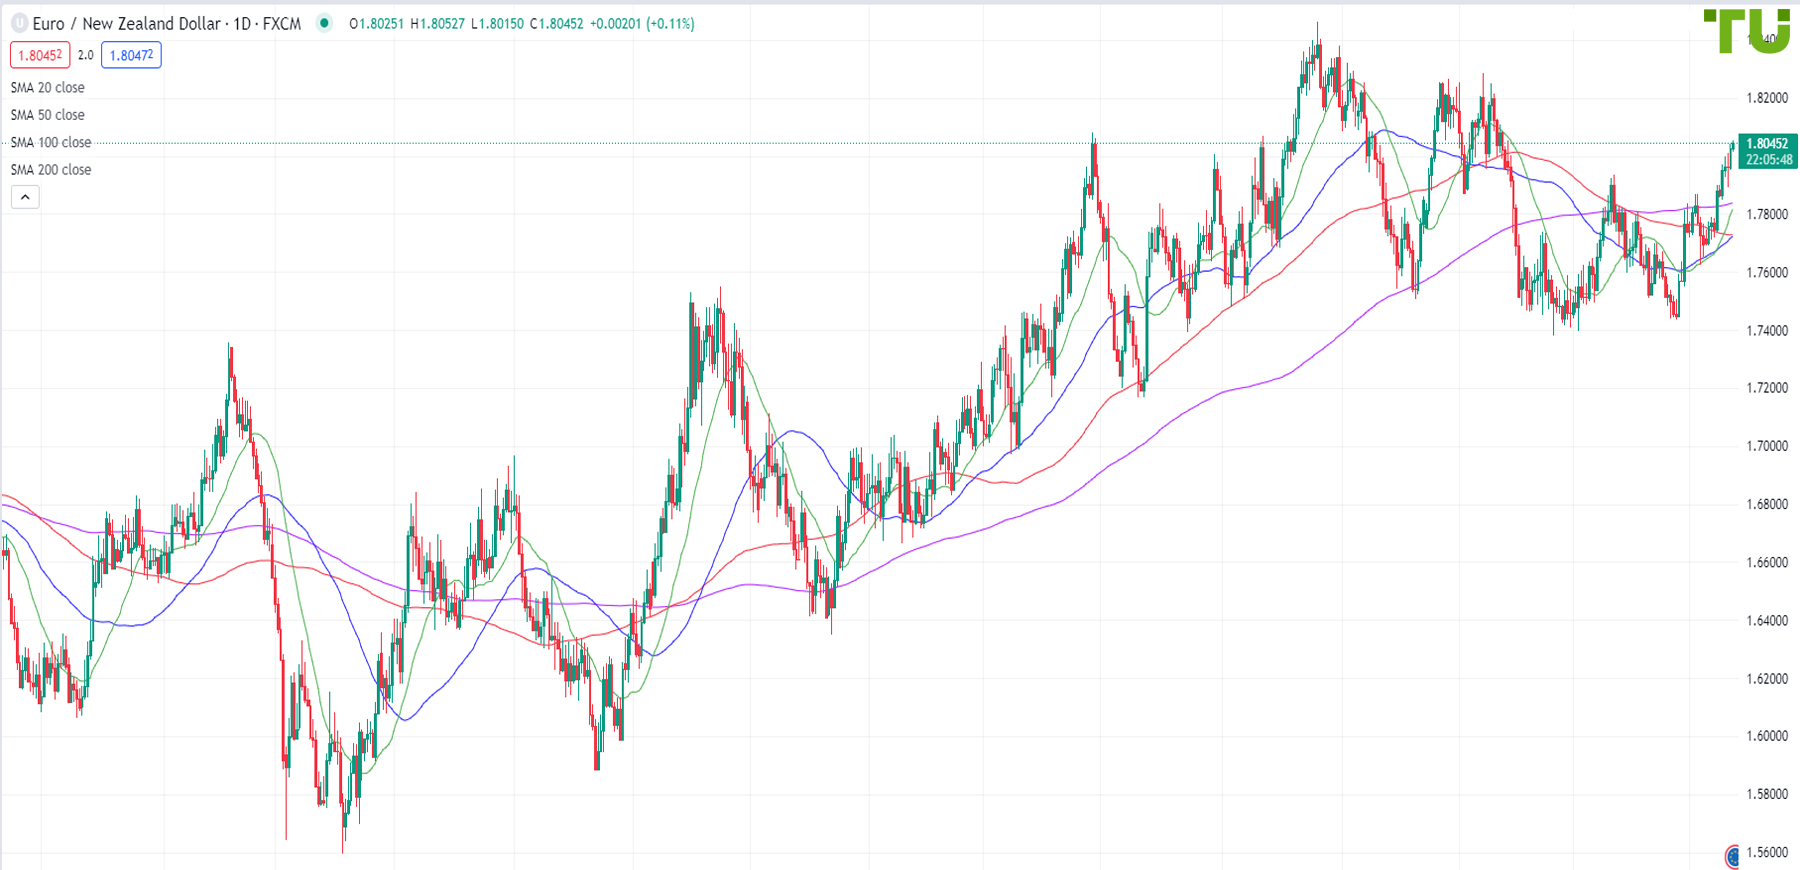 Euro/Kiwi moves higher